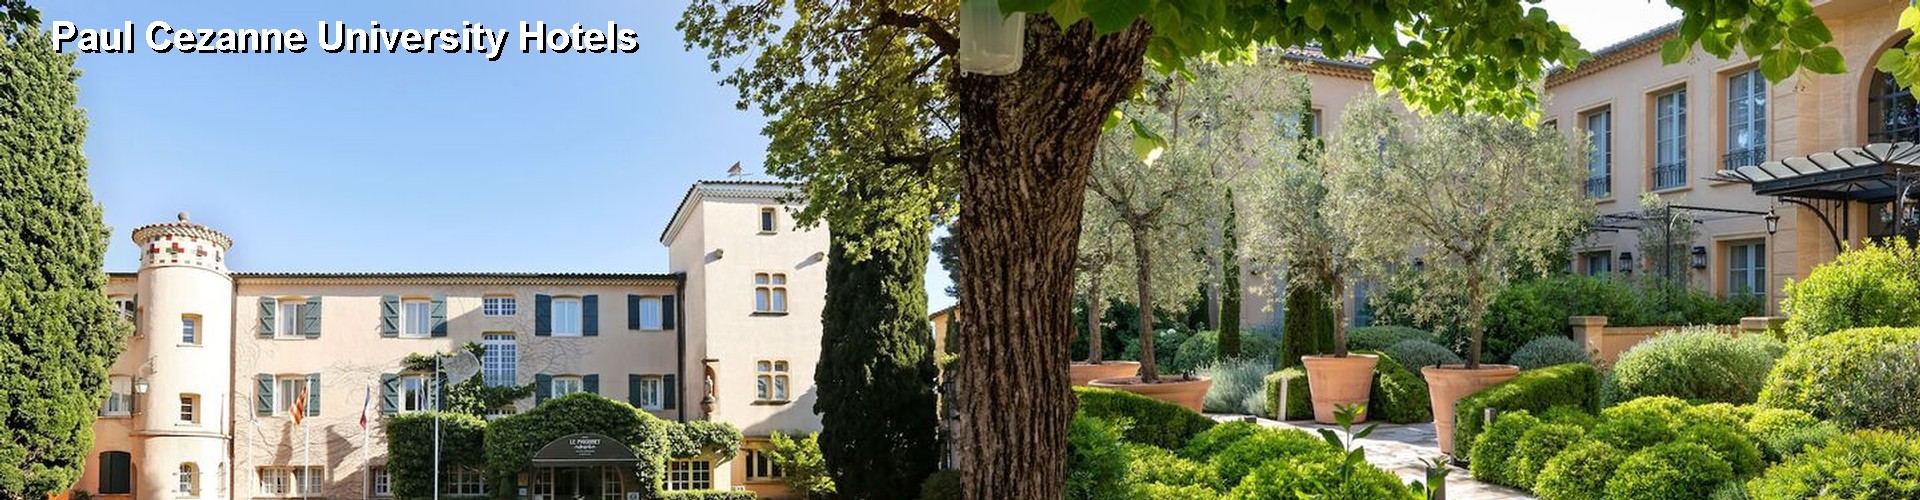 5 Best Hotels near Paul Cezanne University